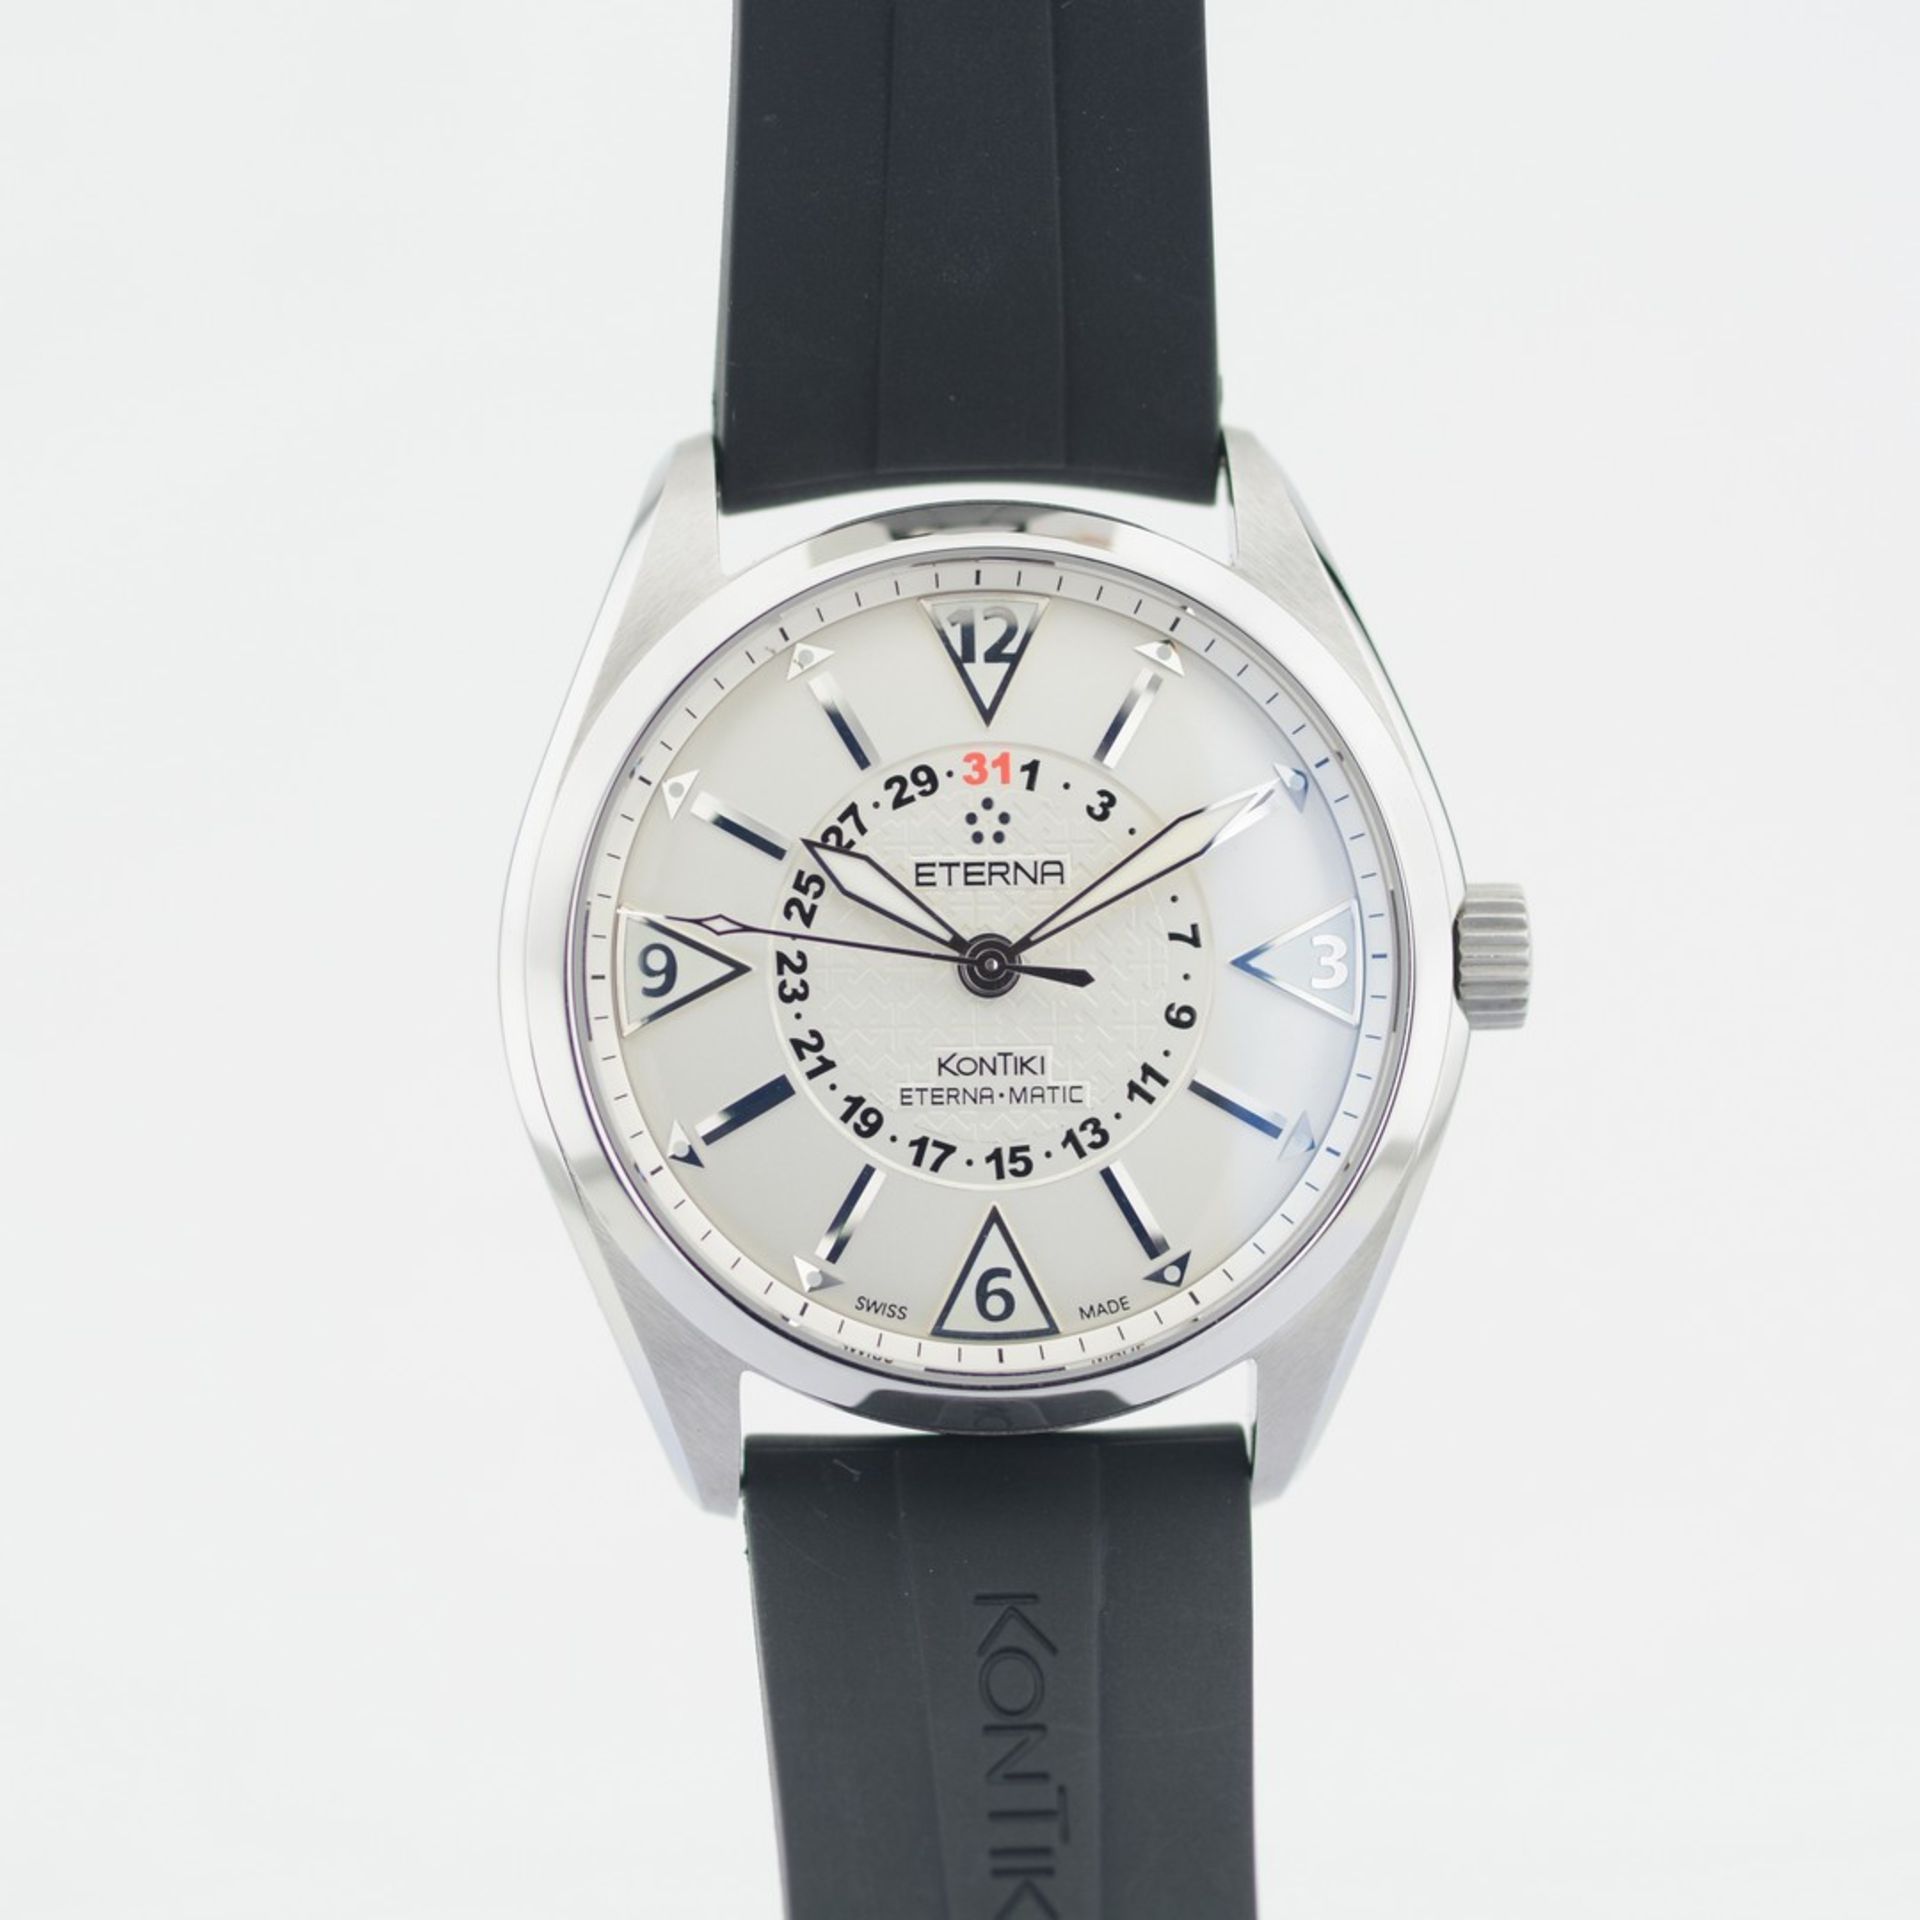 Eterna-Matic / Kontiki - Four Hands - Gentlemen's Steel Wristwatch - Image 2 of 8